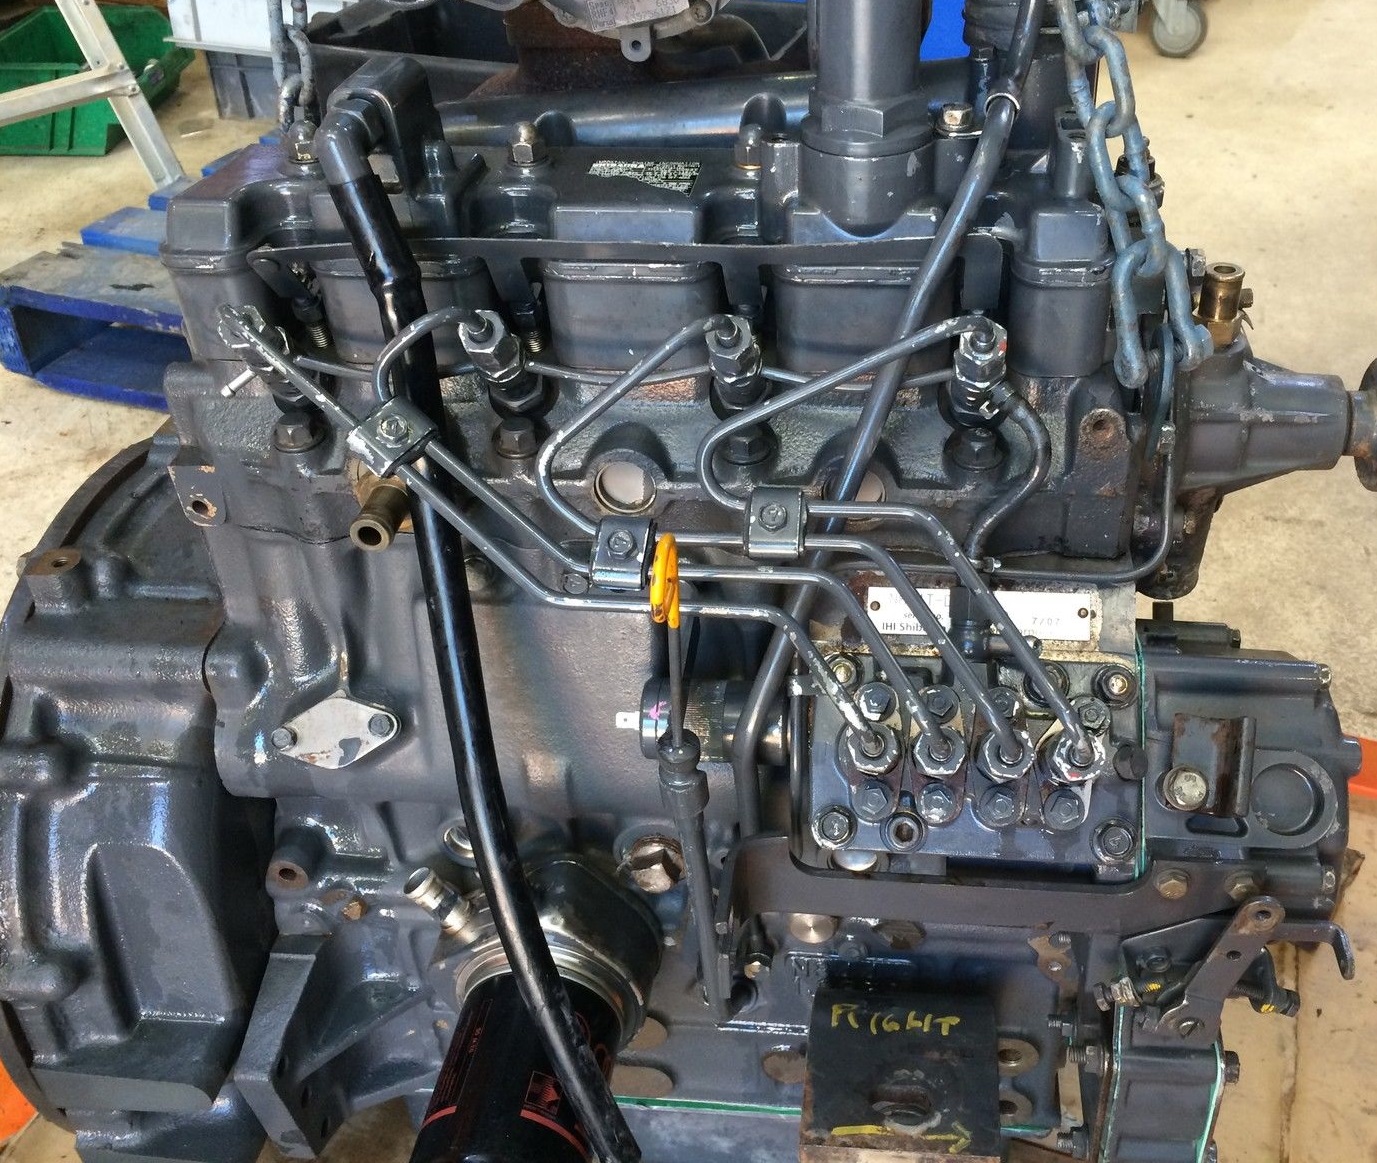 Shibaura N844 części zamienne silnika z maszyn budowlanych